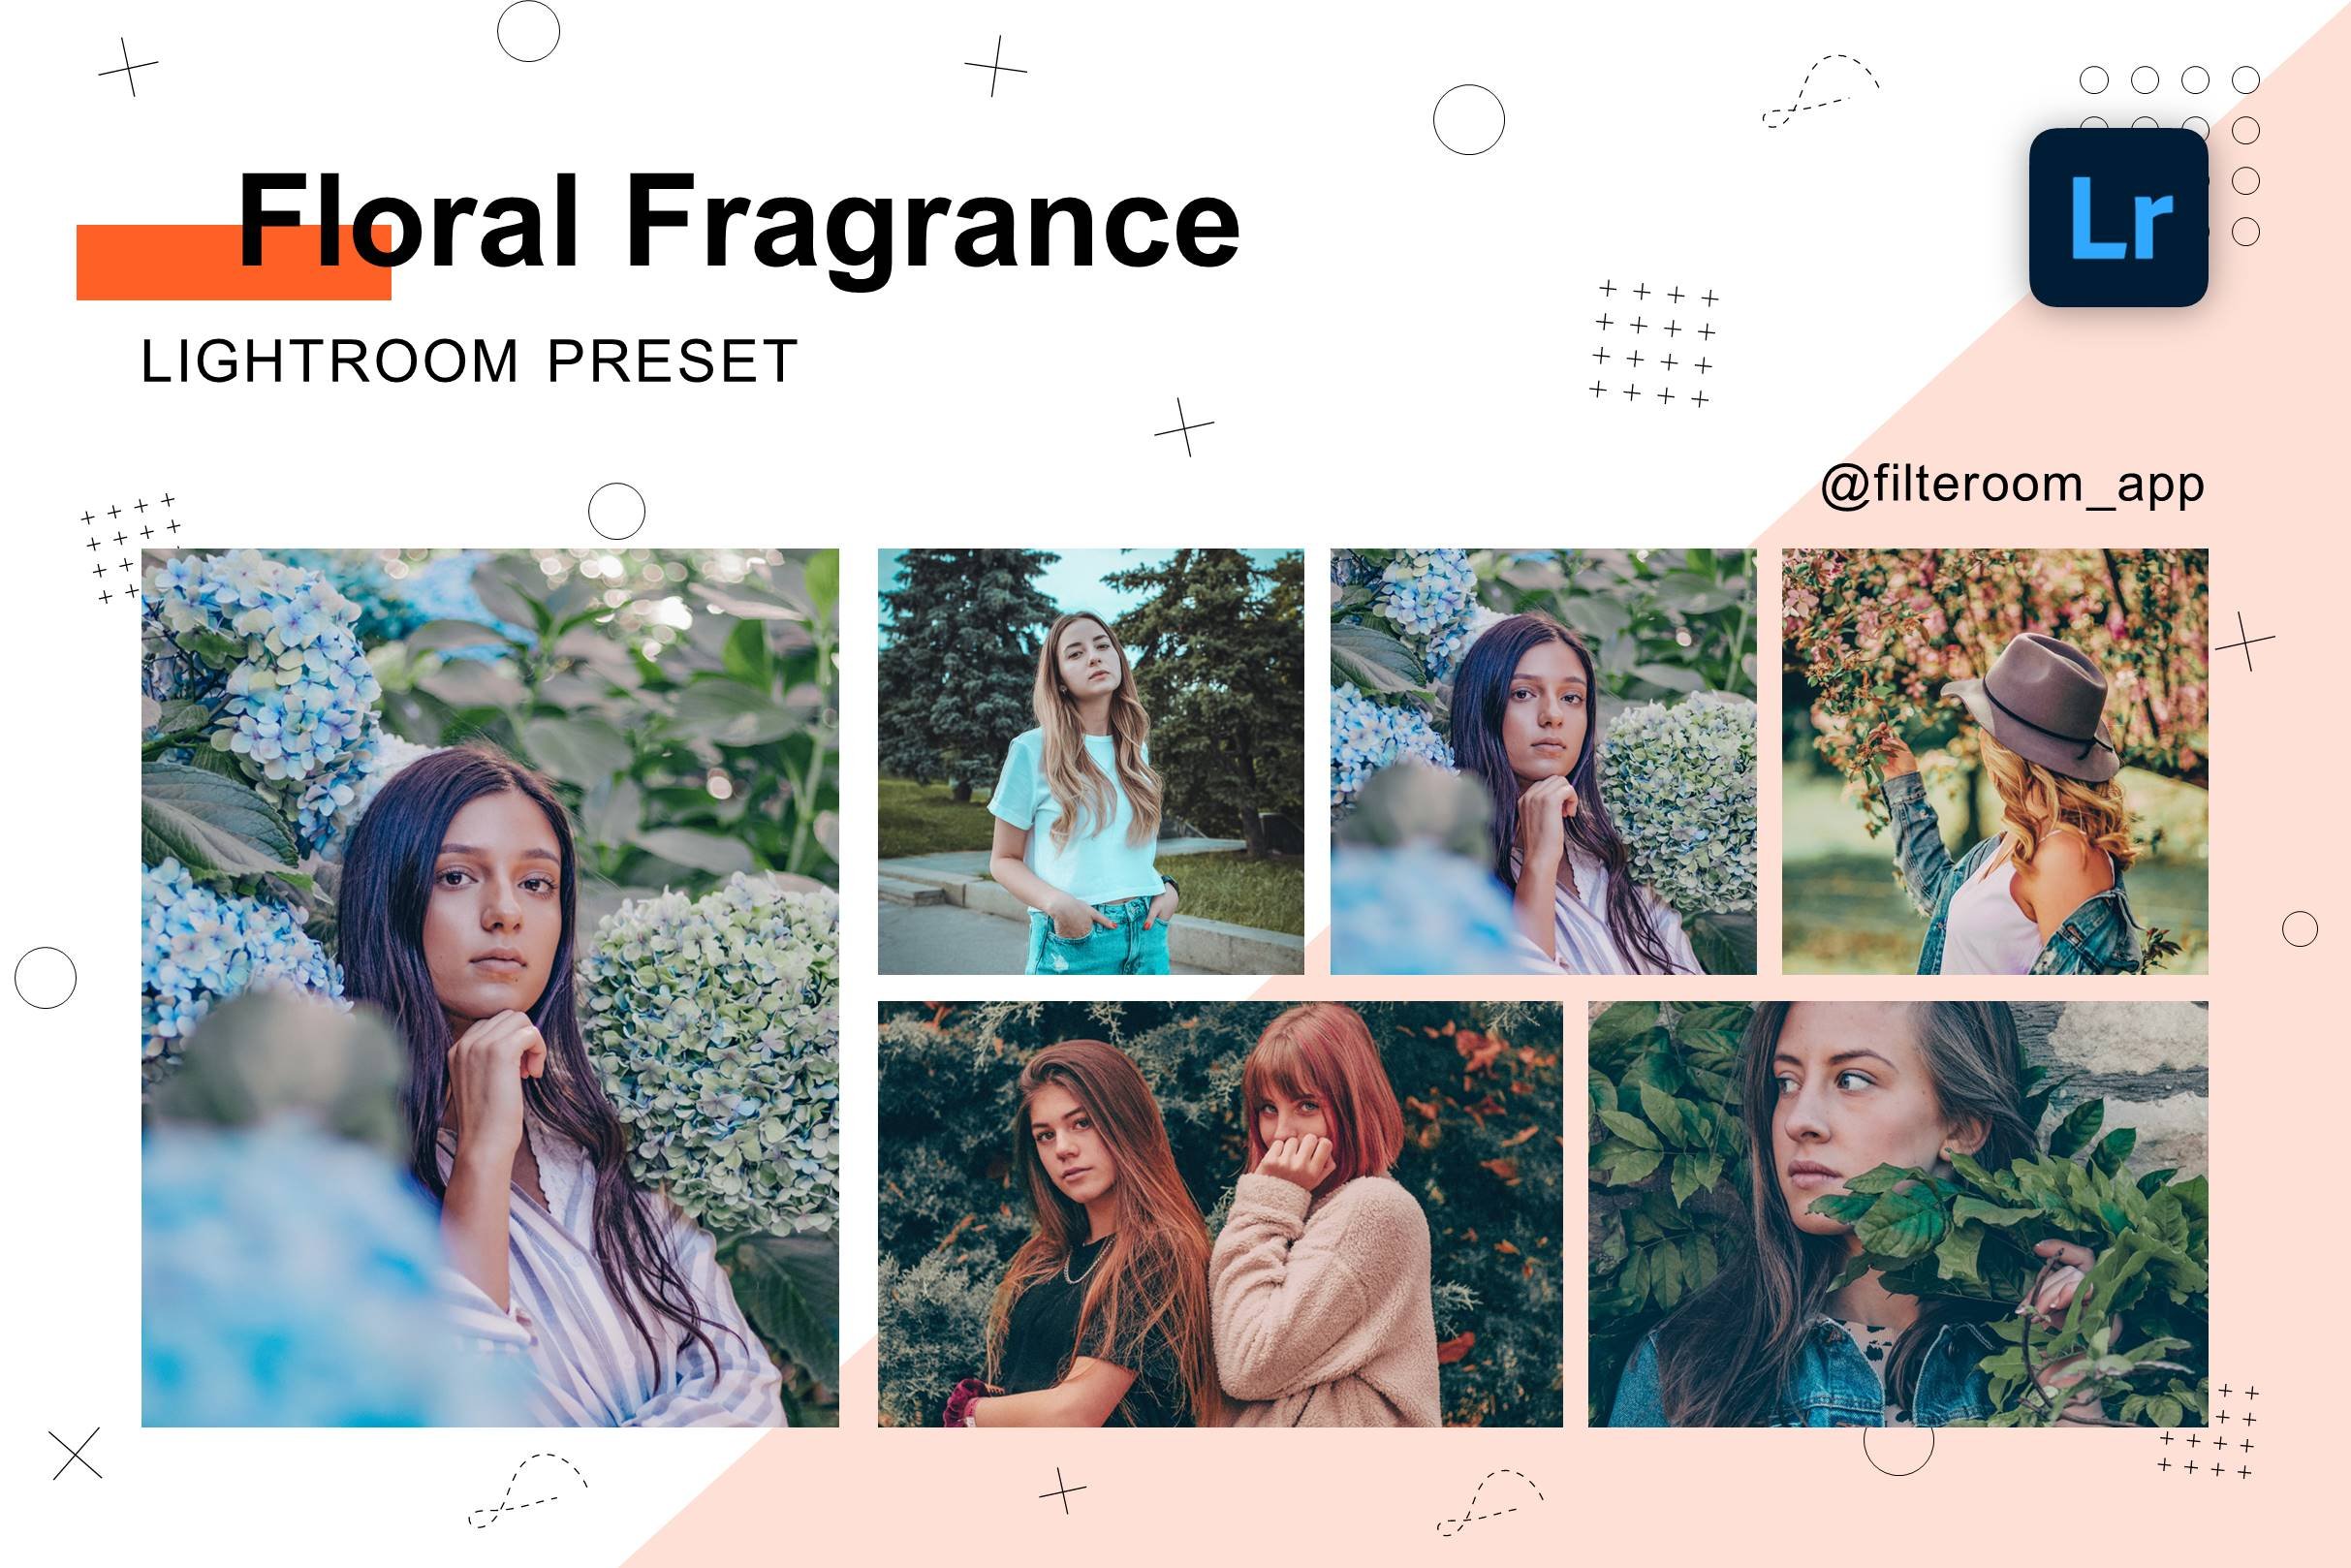 Floral Fragrance - Lightroom Presetscover image.